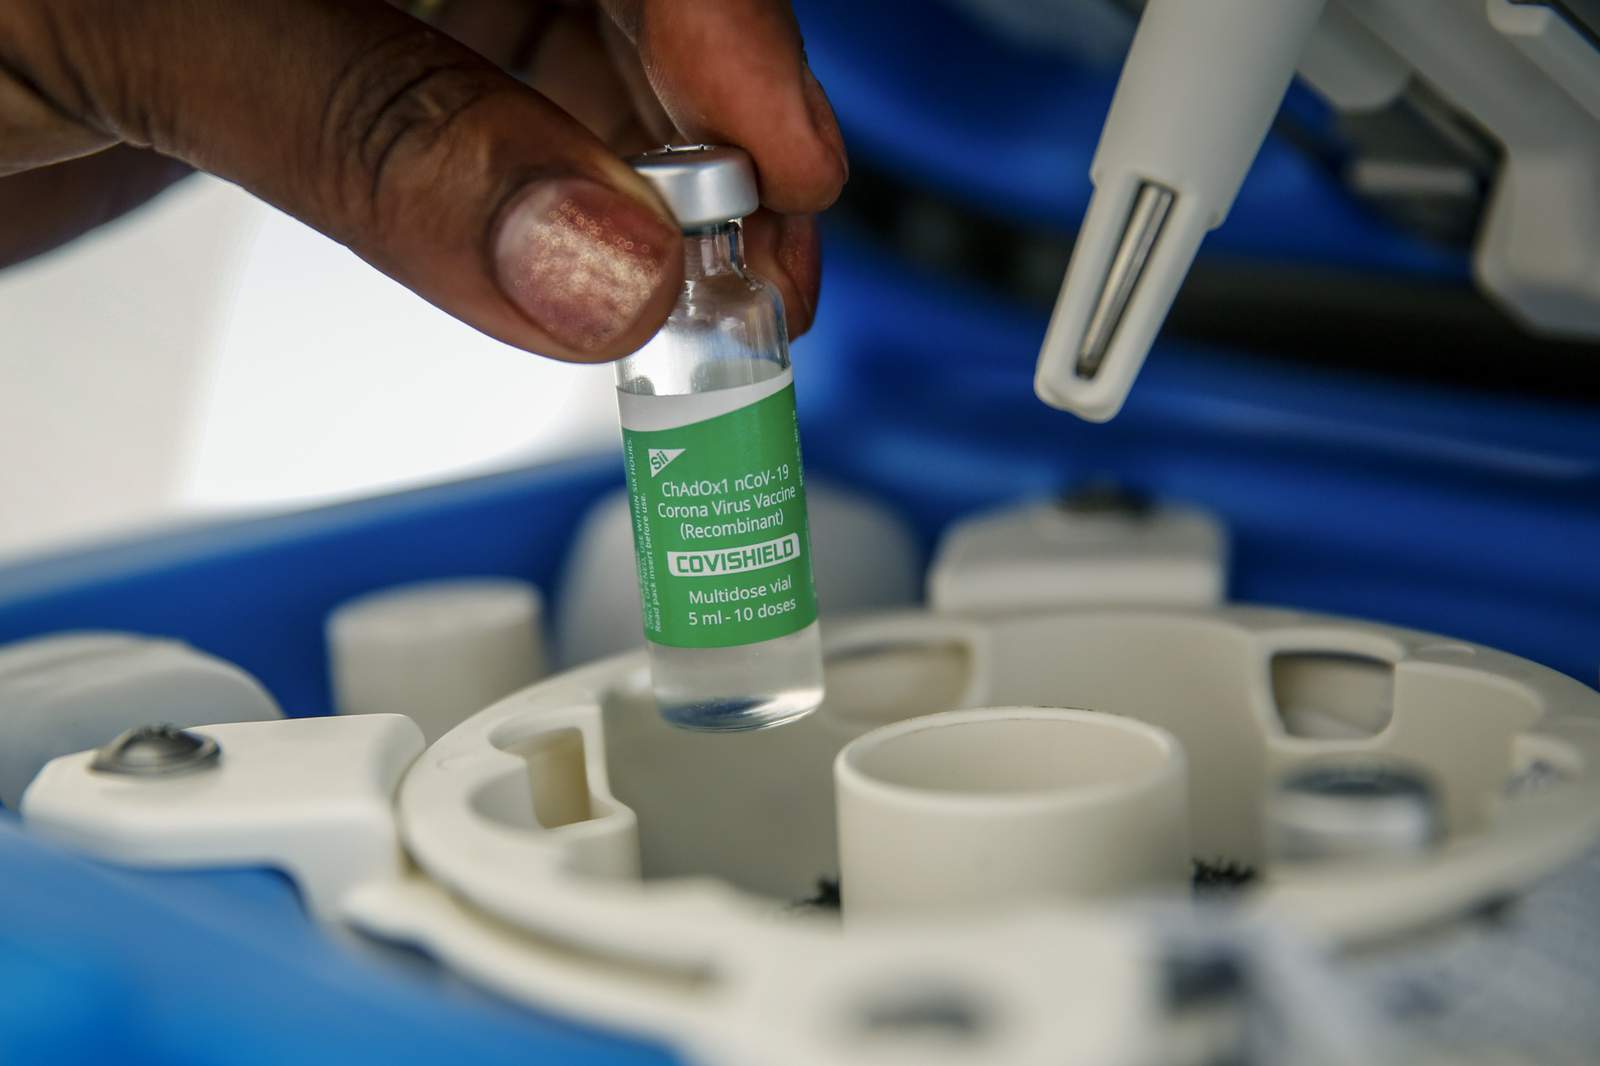 UN-backed vaccine delivery program warns of supply delays